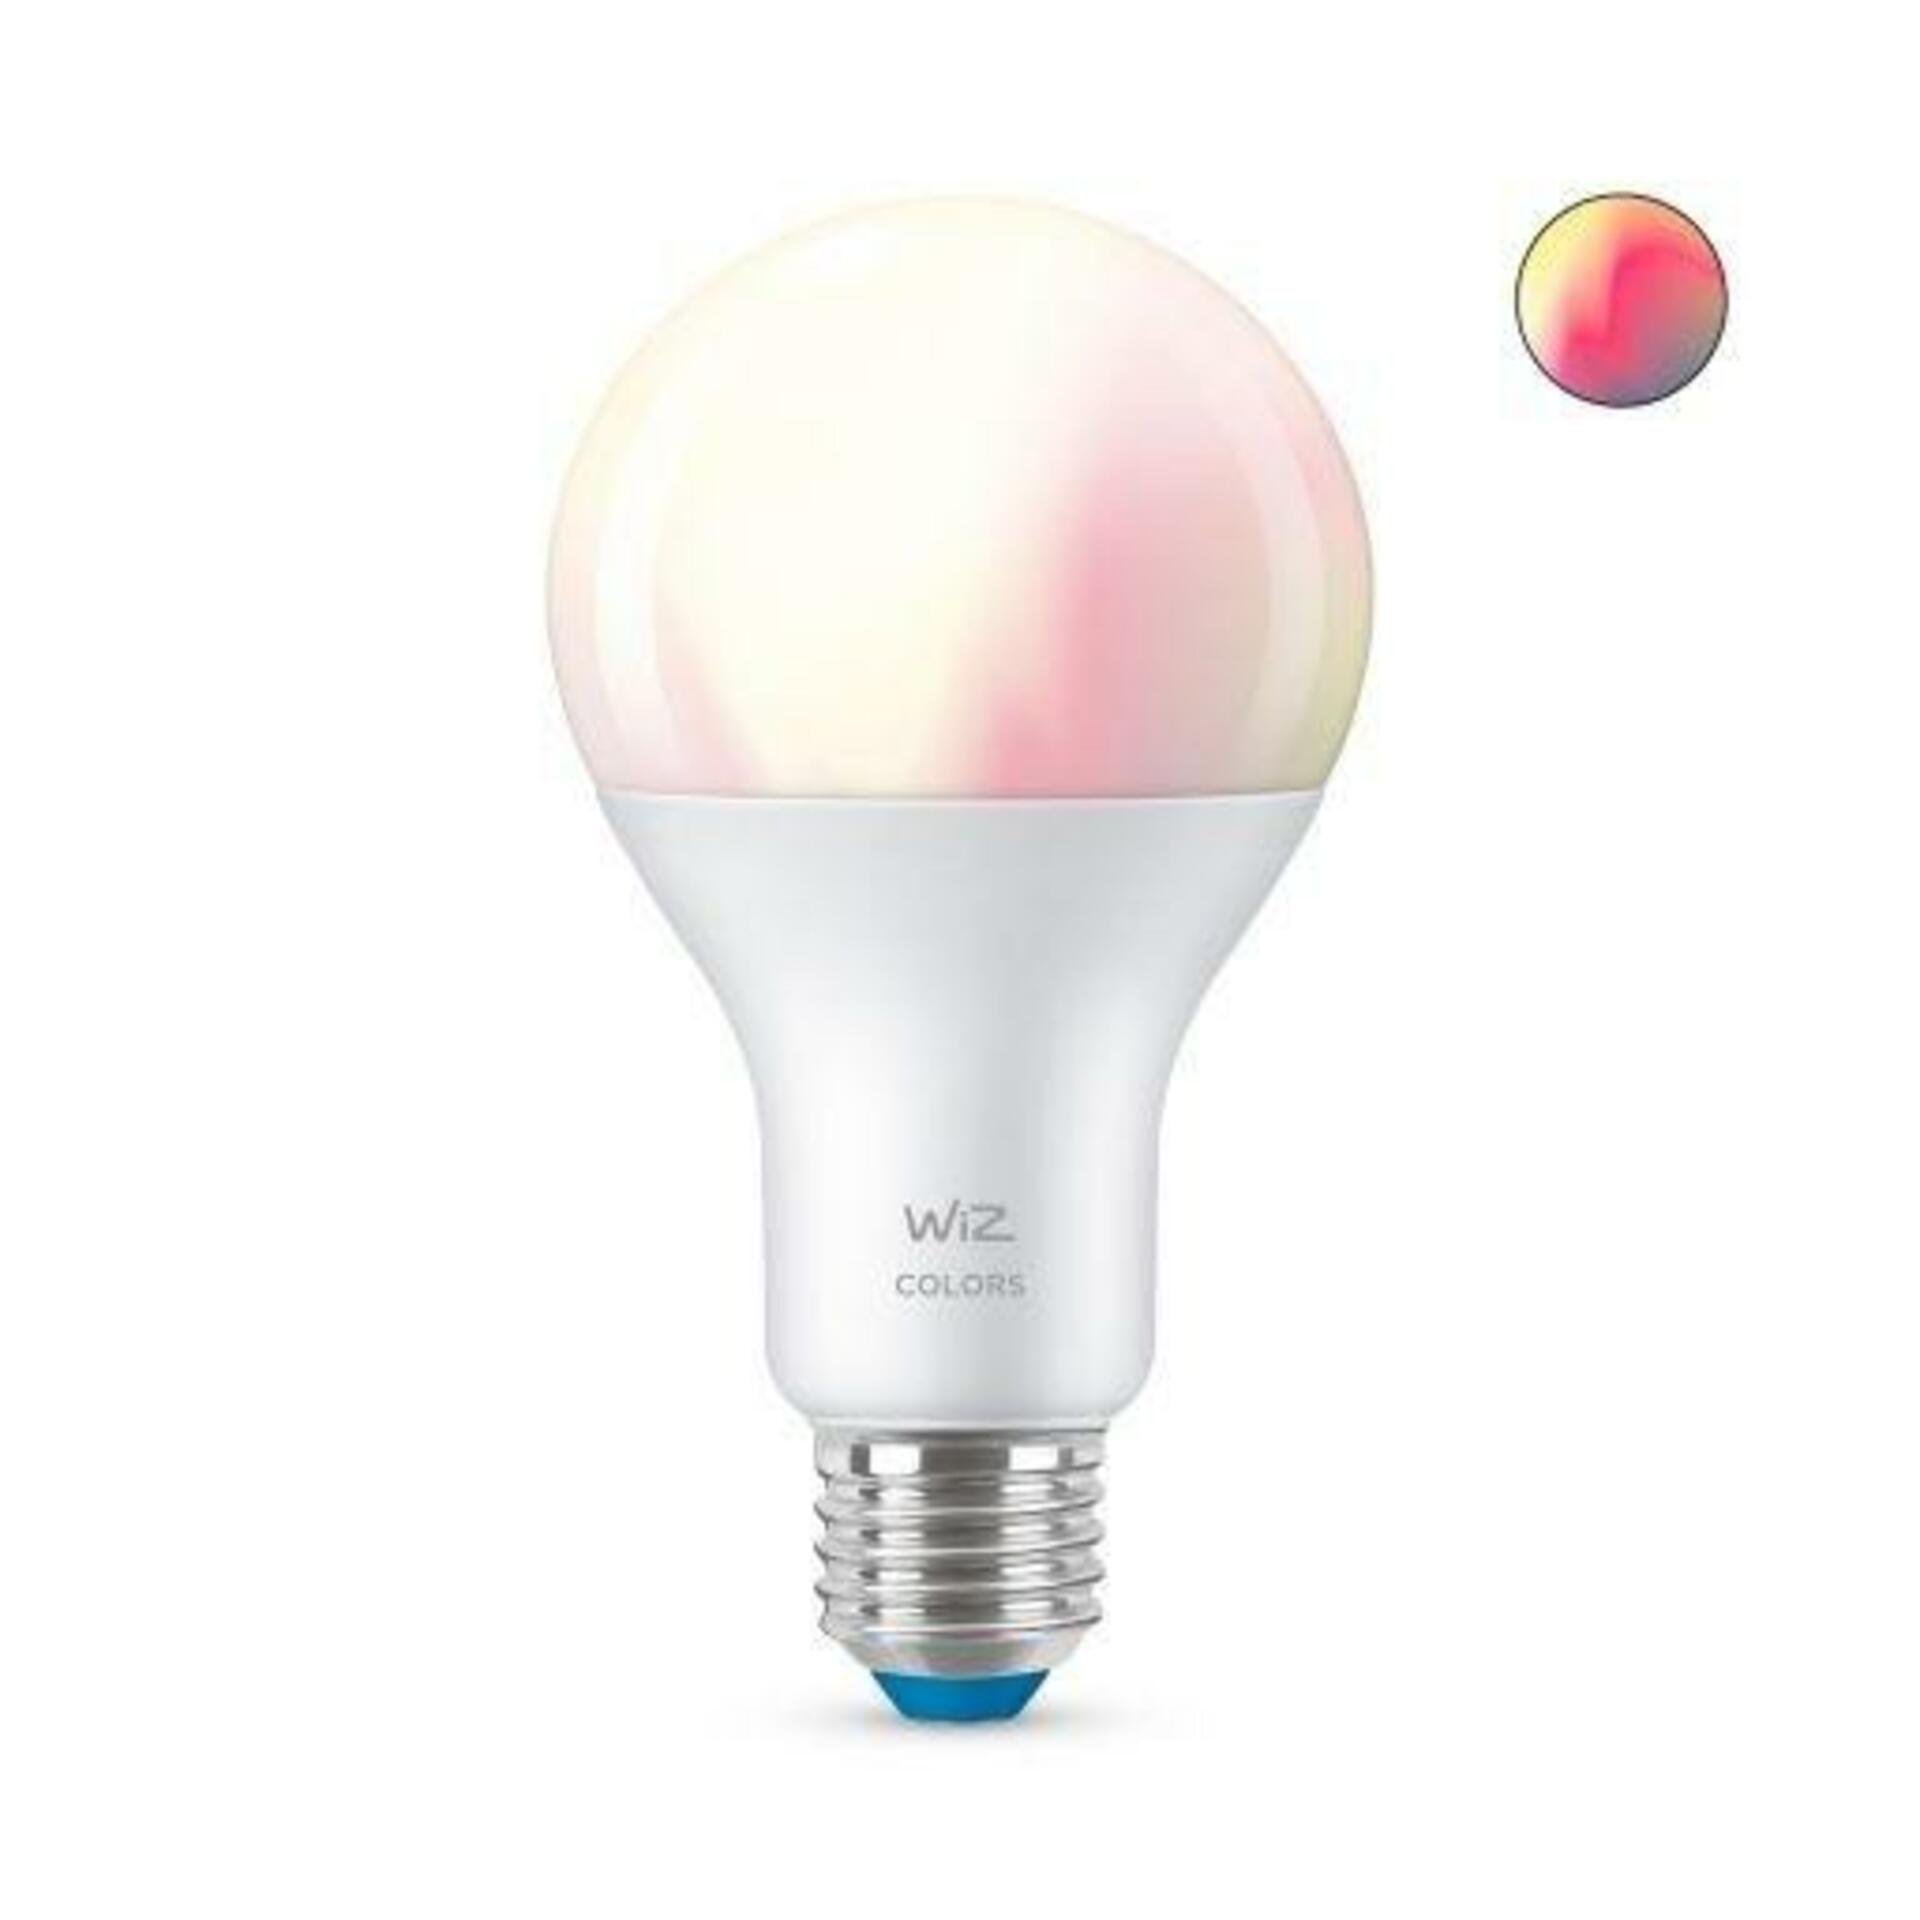 Levně LED Žárovka WiZ Colors 8718699786199 E27 A67 13-100W 1521lm 2200-6500K, RGB 16 mil. barev, stmívatelná